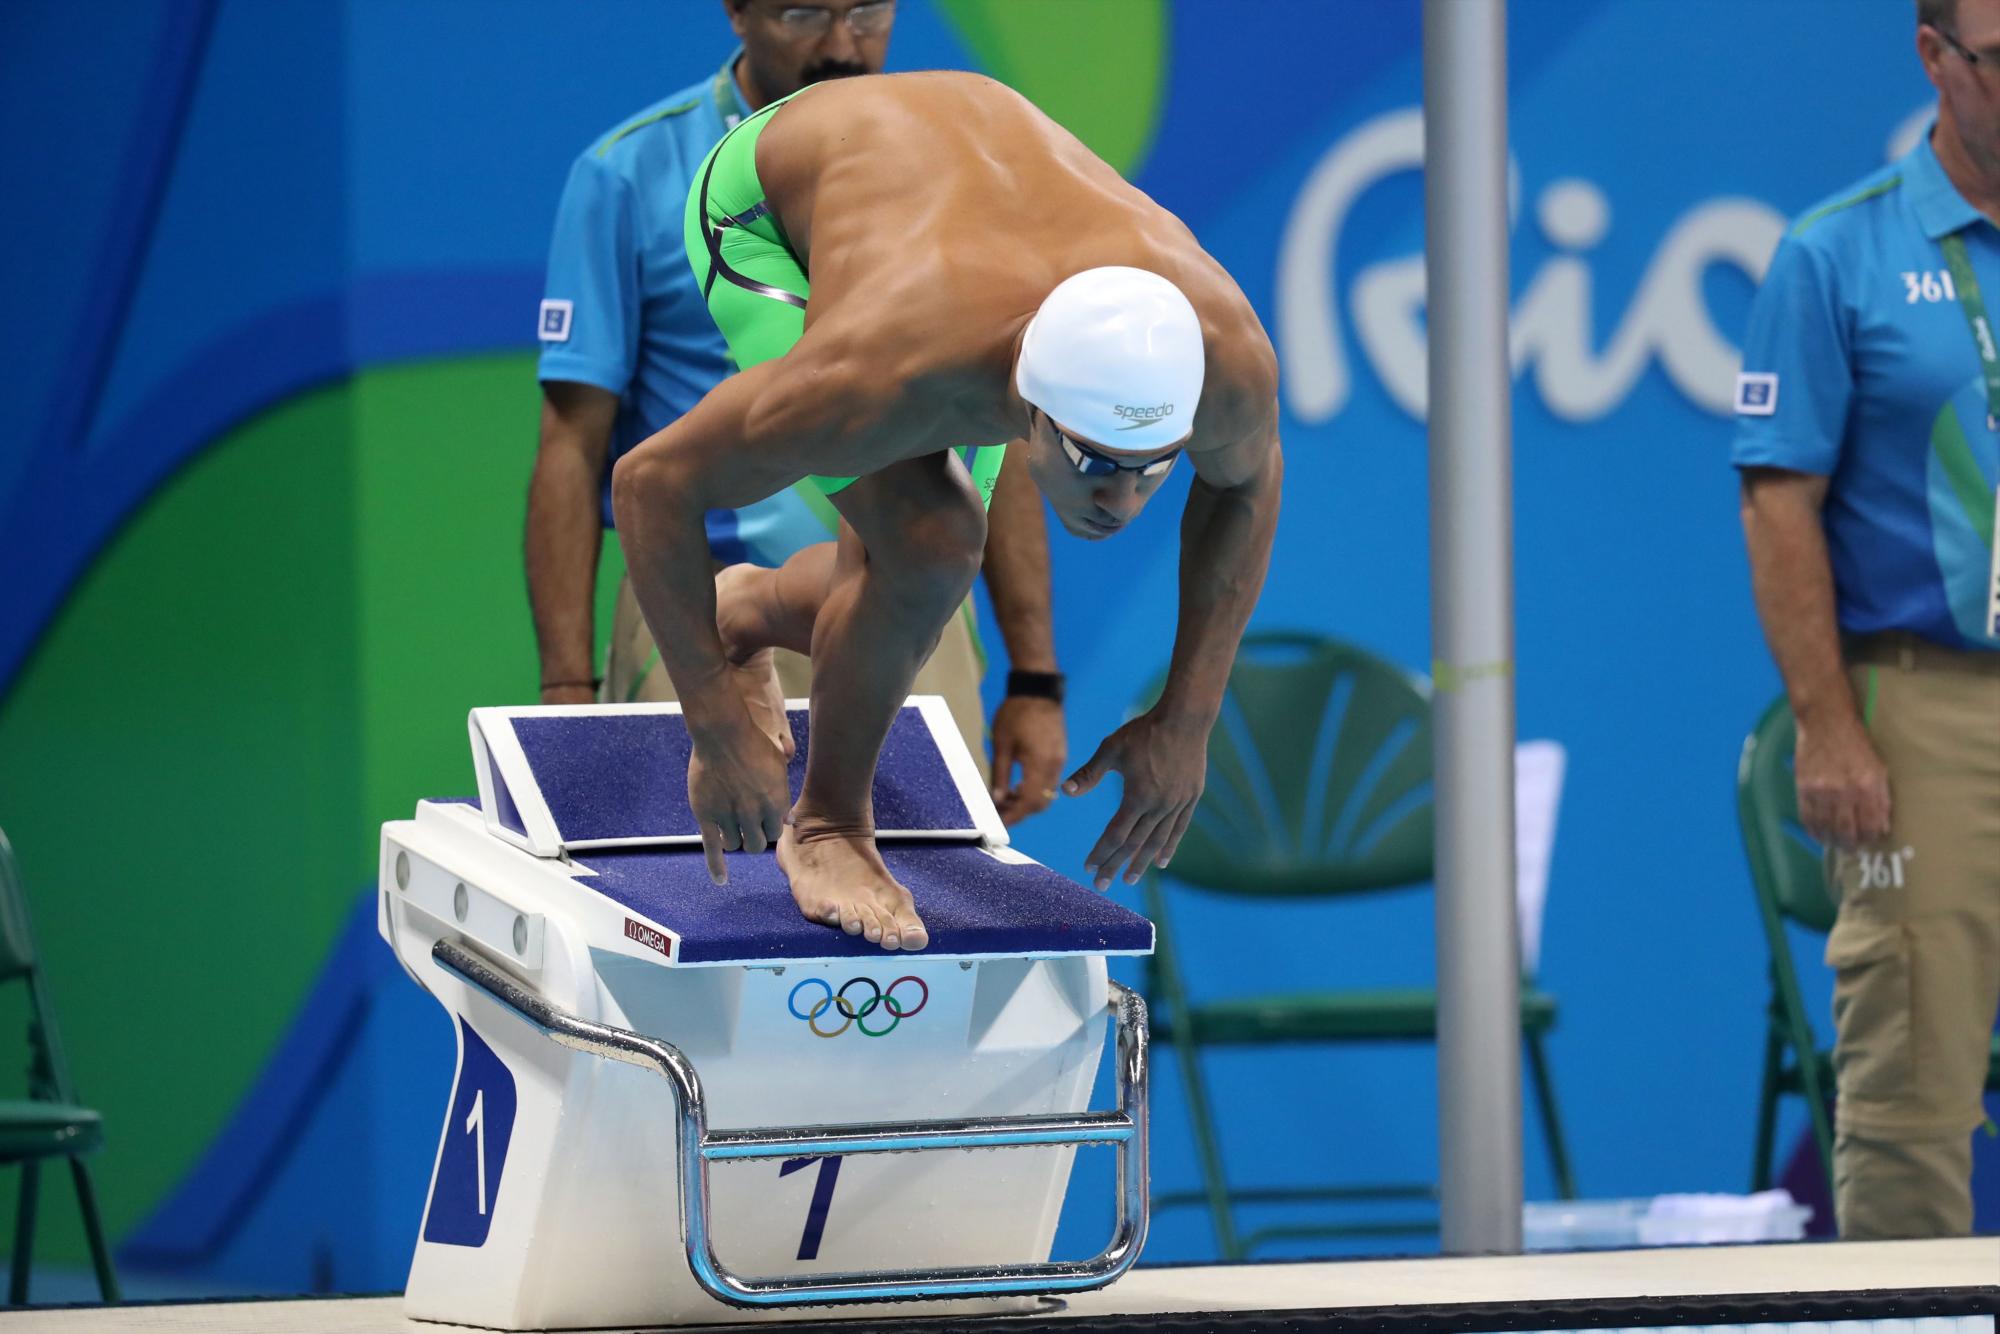 El nadador sirio Rami Anis del equipo olímpico de refugiados compite el martes 9 de agosto de 2016, en la categoría 100m libre masculino en el Estadio Acuático Olímpico en el marco de los Juegos Olímpicos Río 2016 en Río de Janeiro (Brasil).